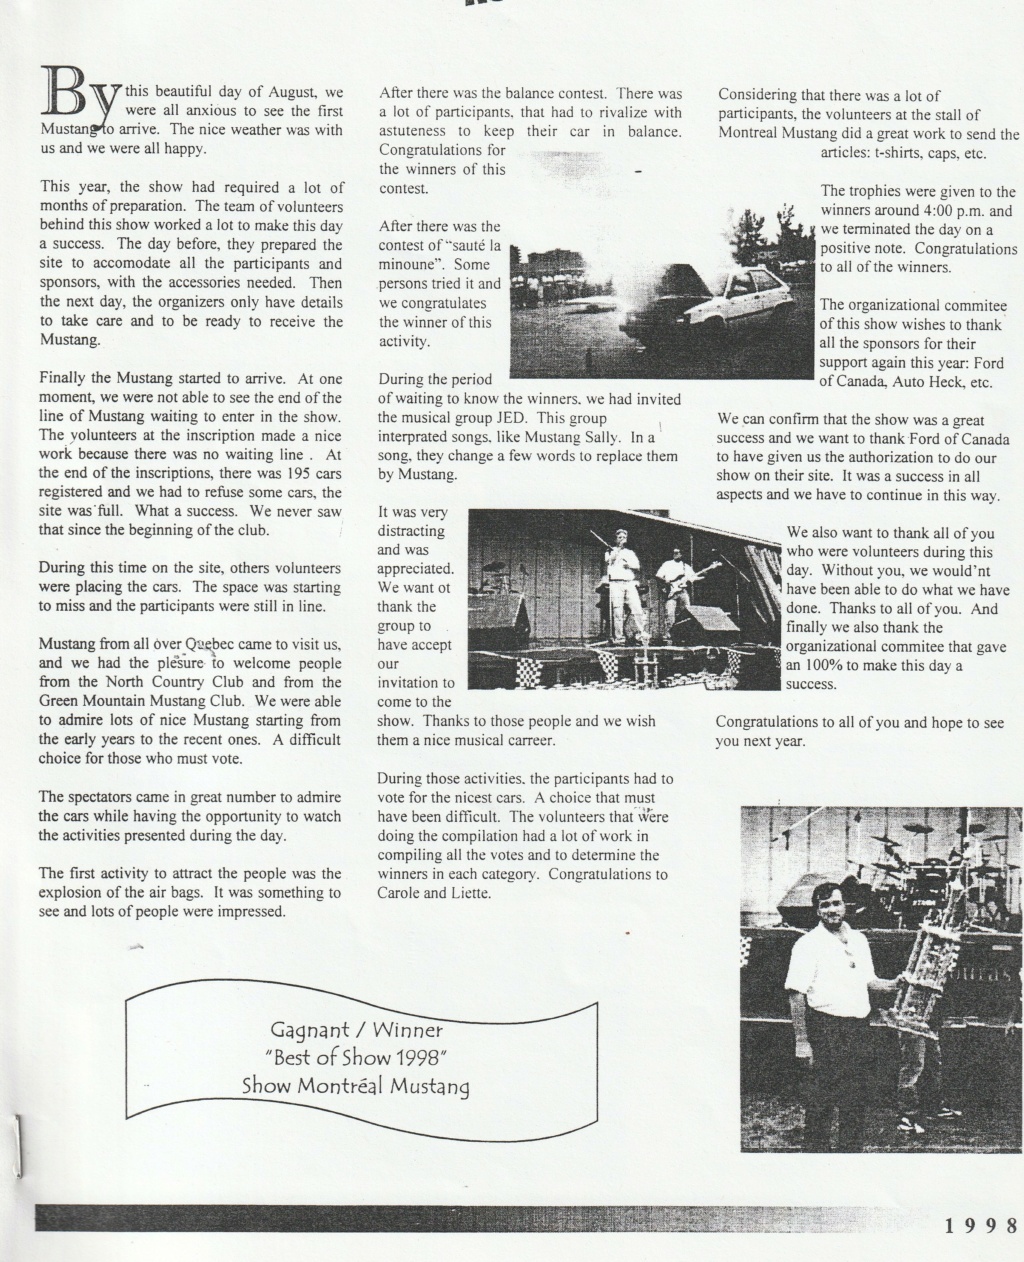 Montréal Mustang dans le temps! 1981 à aujourd'hui (Histoire en photos) - Page 8 Img_2497